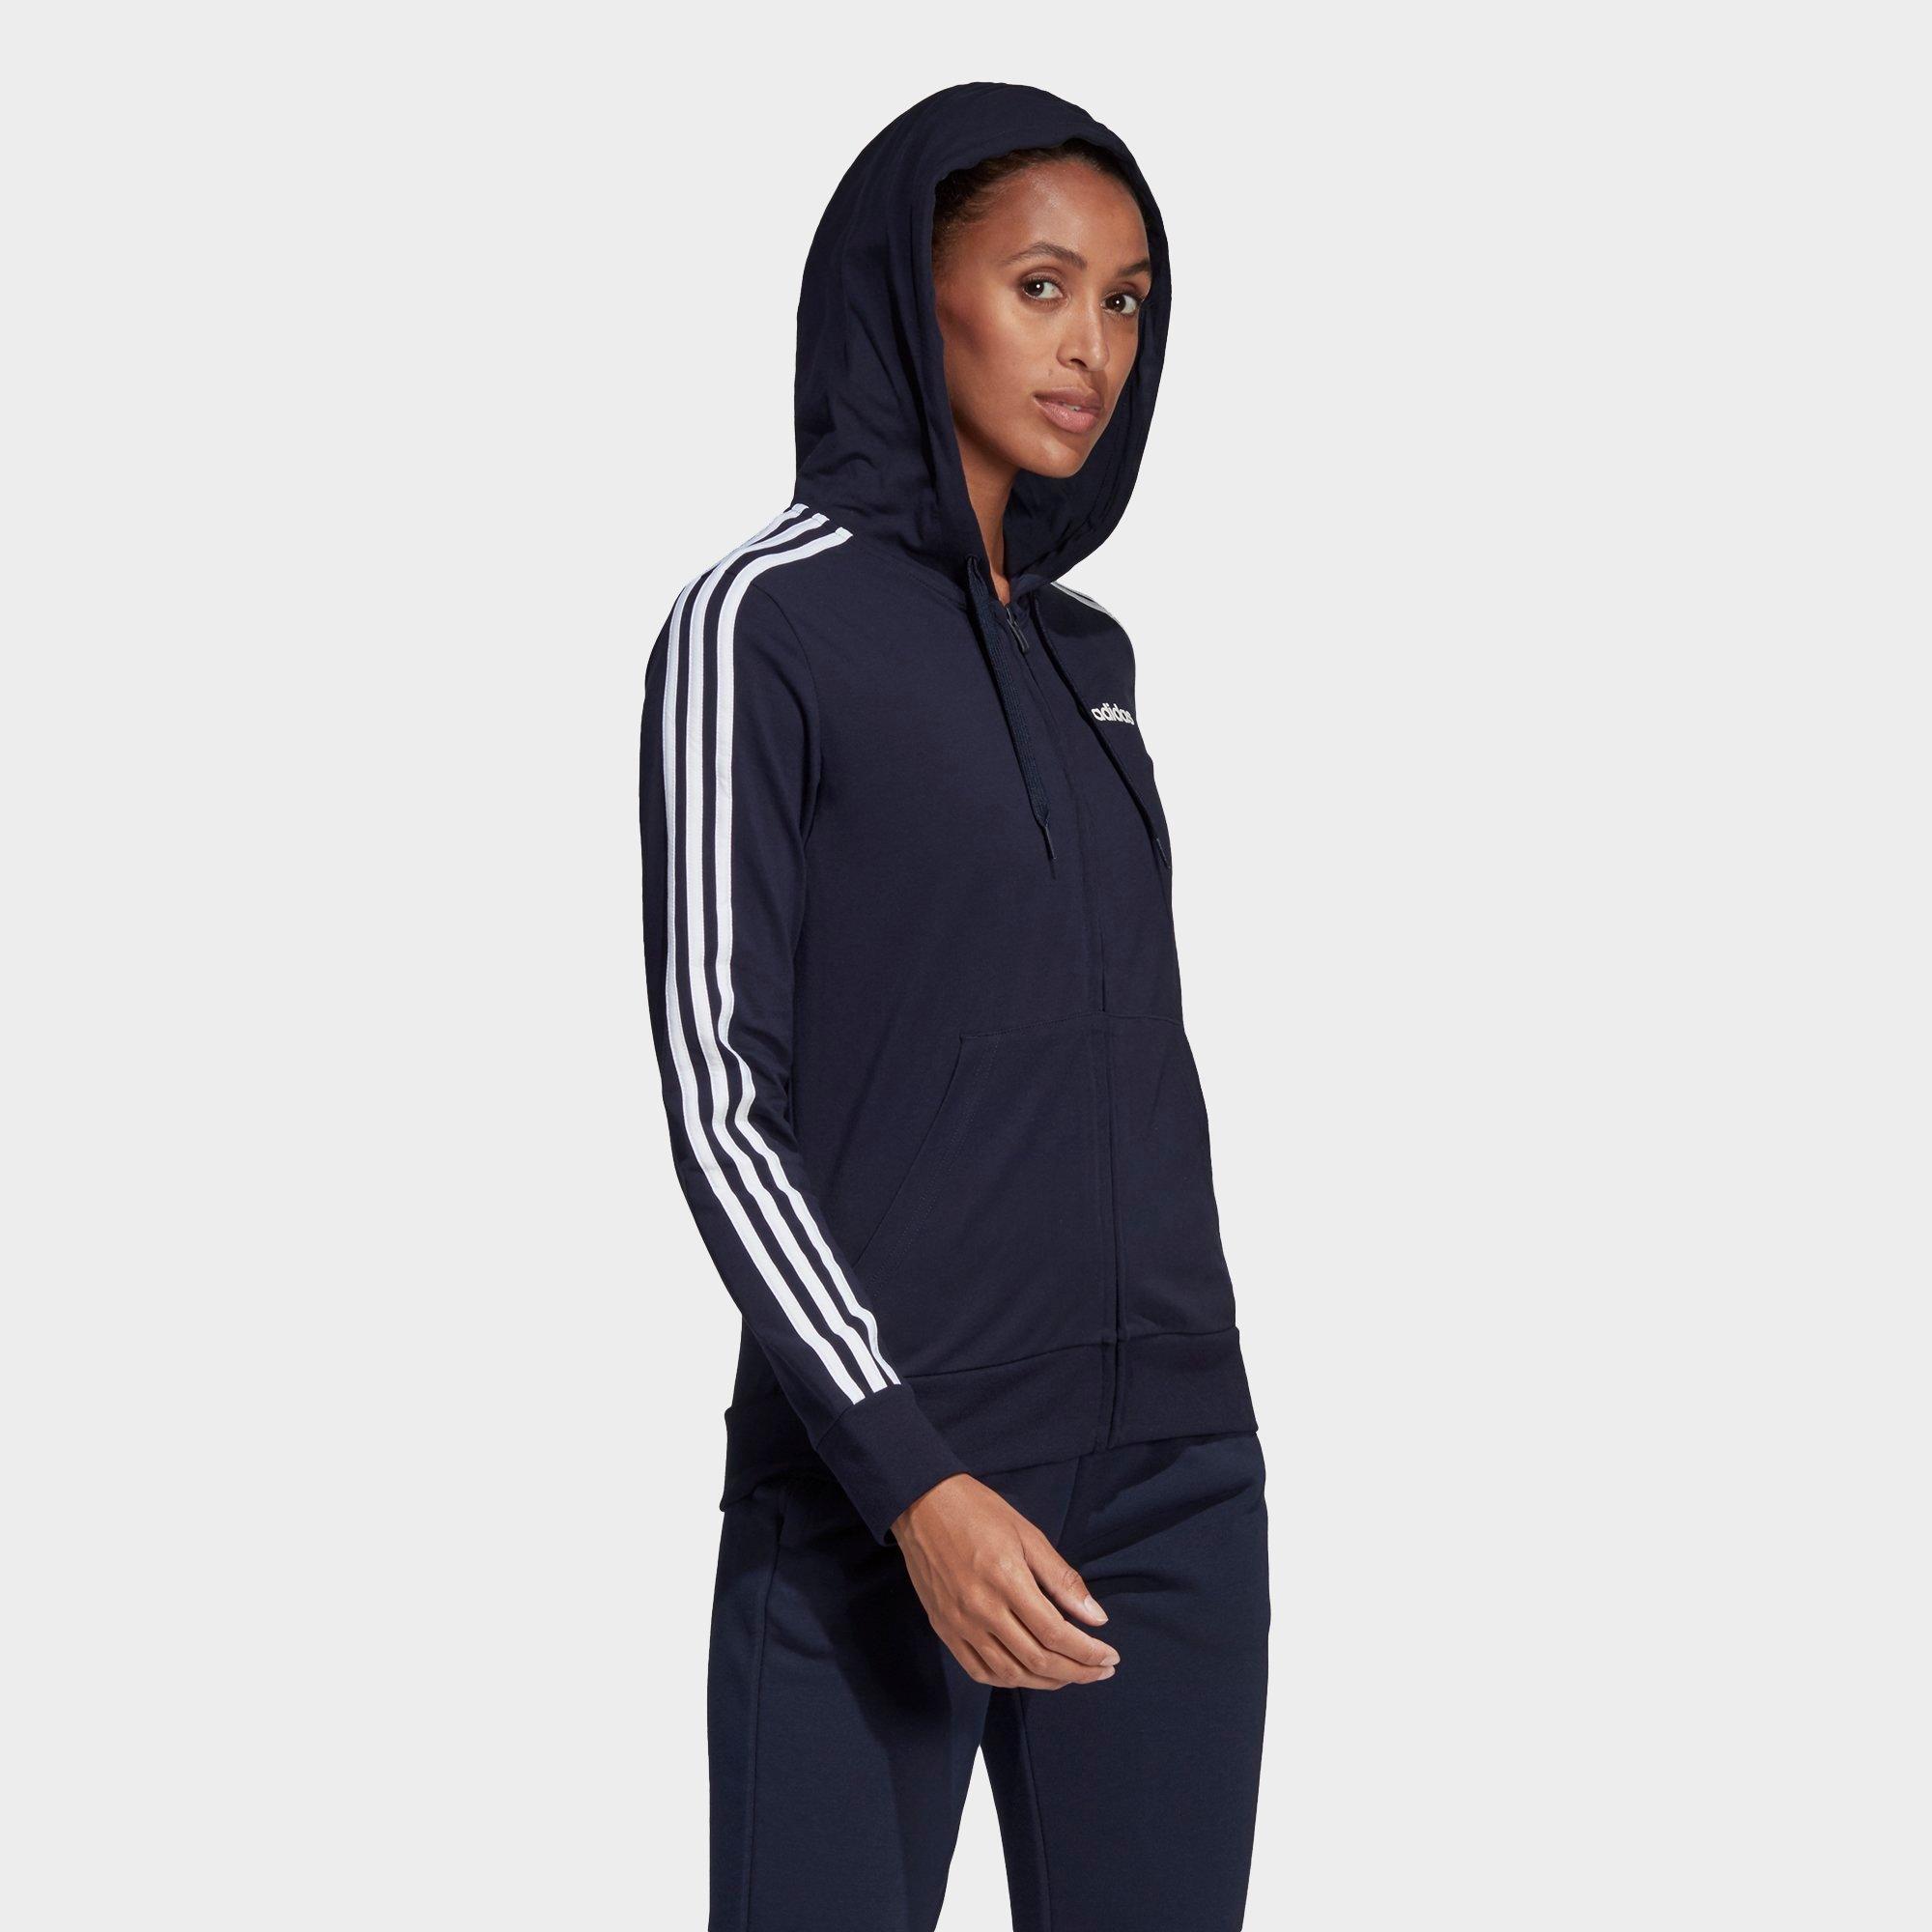 adidas 3 stripe zip hoodie women's